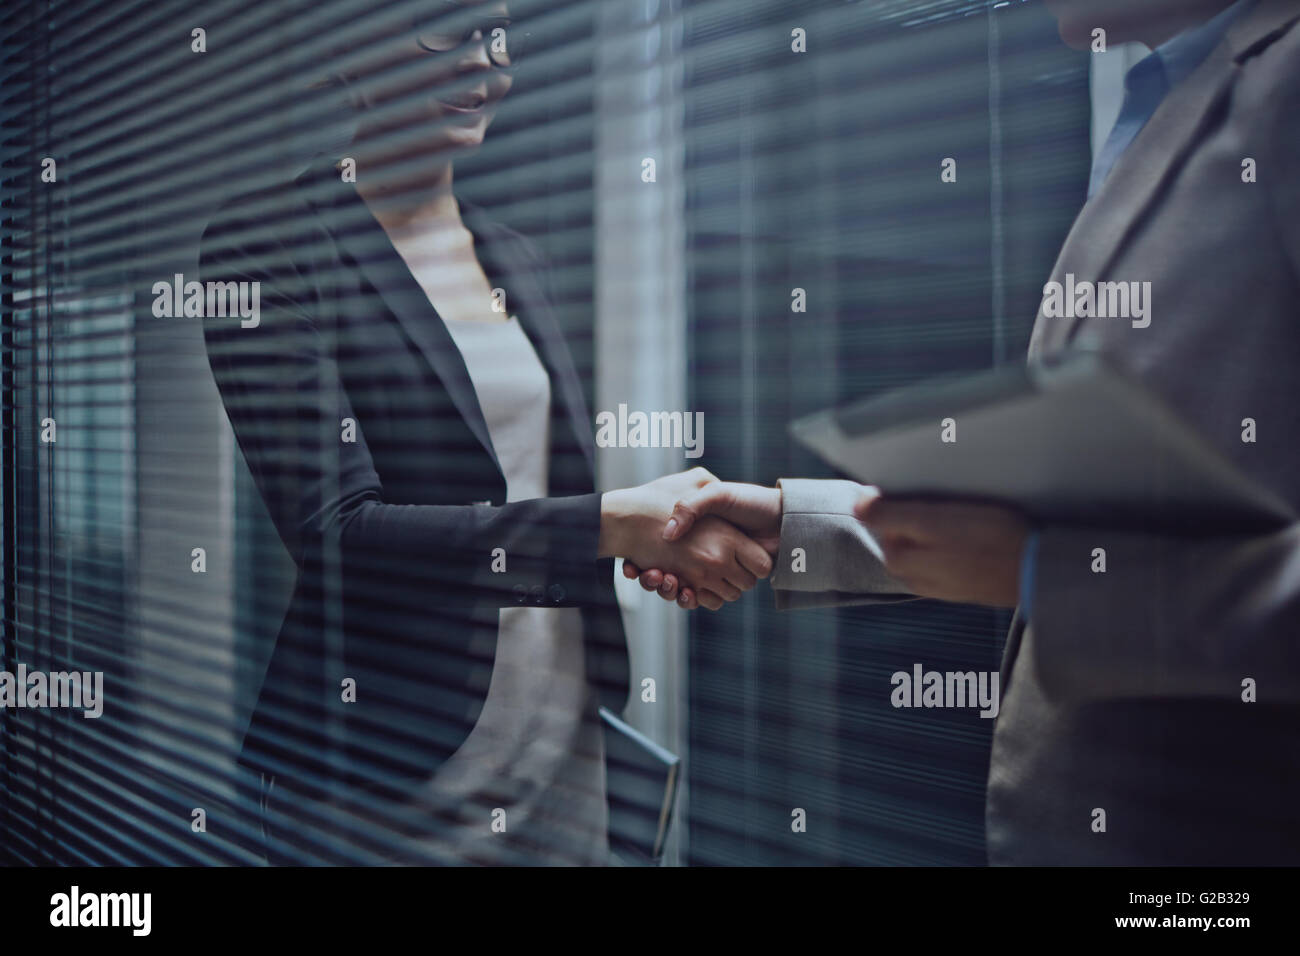 Business handshaking Stock Photo